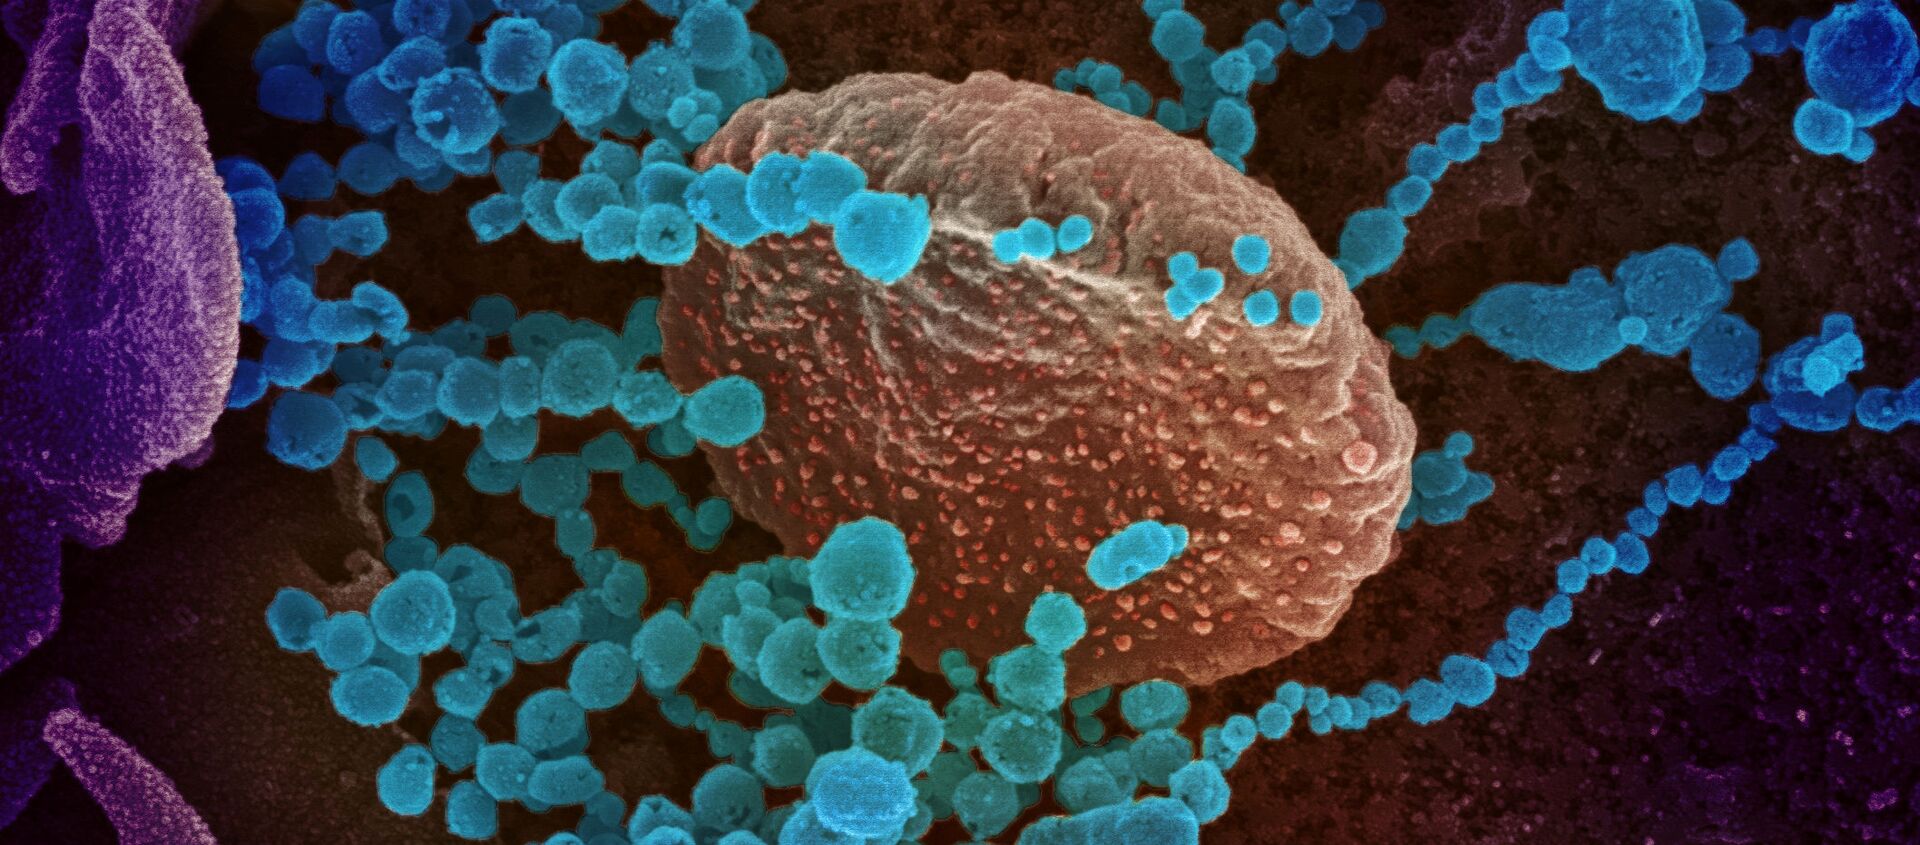 تُظهر صورة المجهر الإلكتروني (الأجسام الزرقاء المستديرة)، والمعروفة أيضًا باسم الفيروس التاجي الجديد SARS-CoV-2، الفيروس الذي يسبب مرض COVID-19. - سبوتنيك عربي, 1920, 30.08.2021